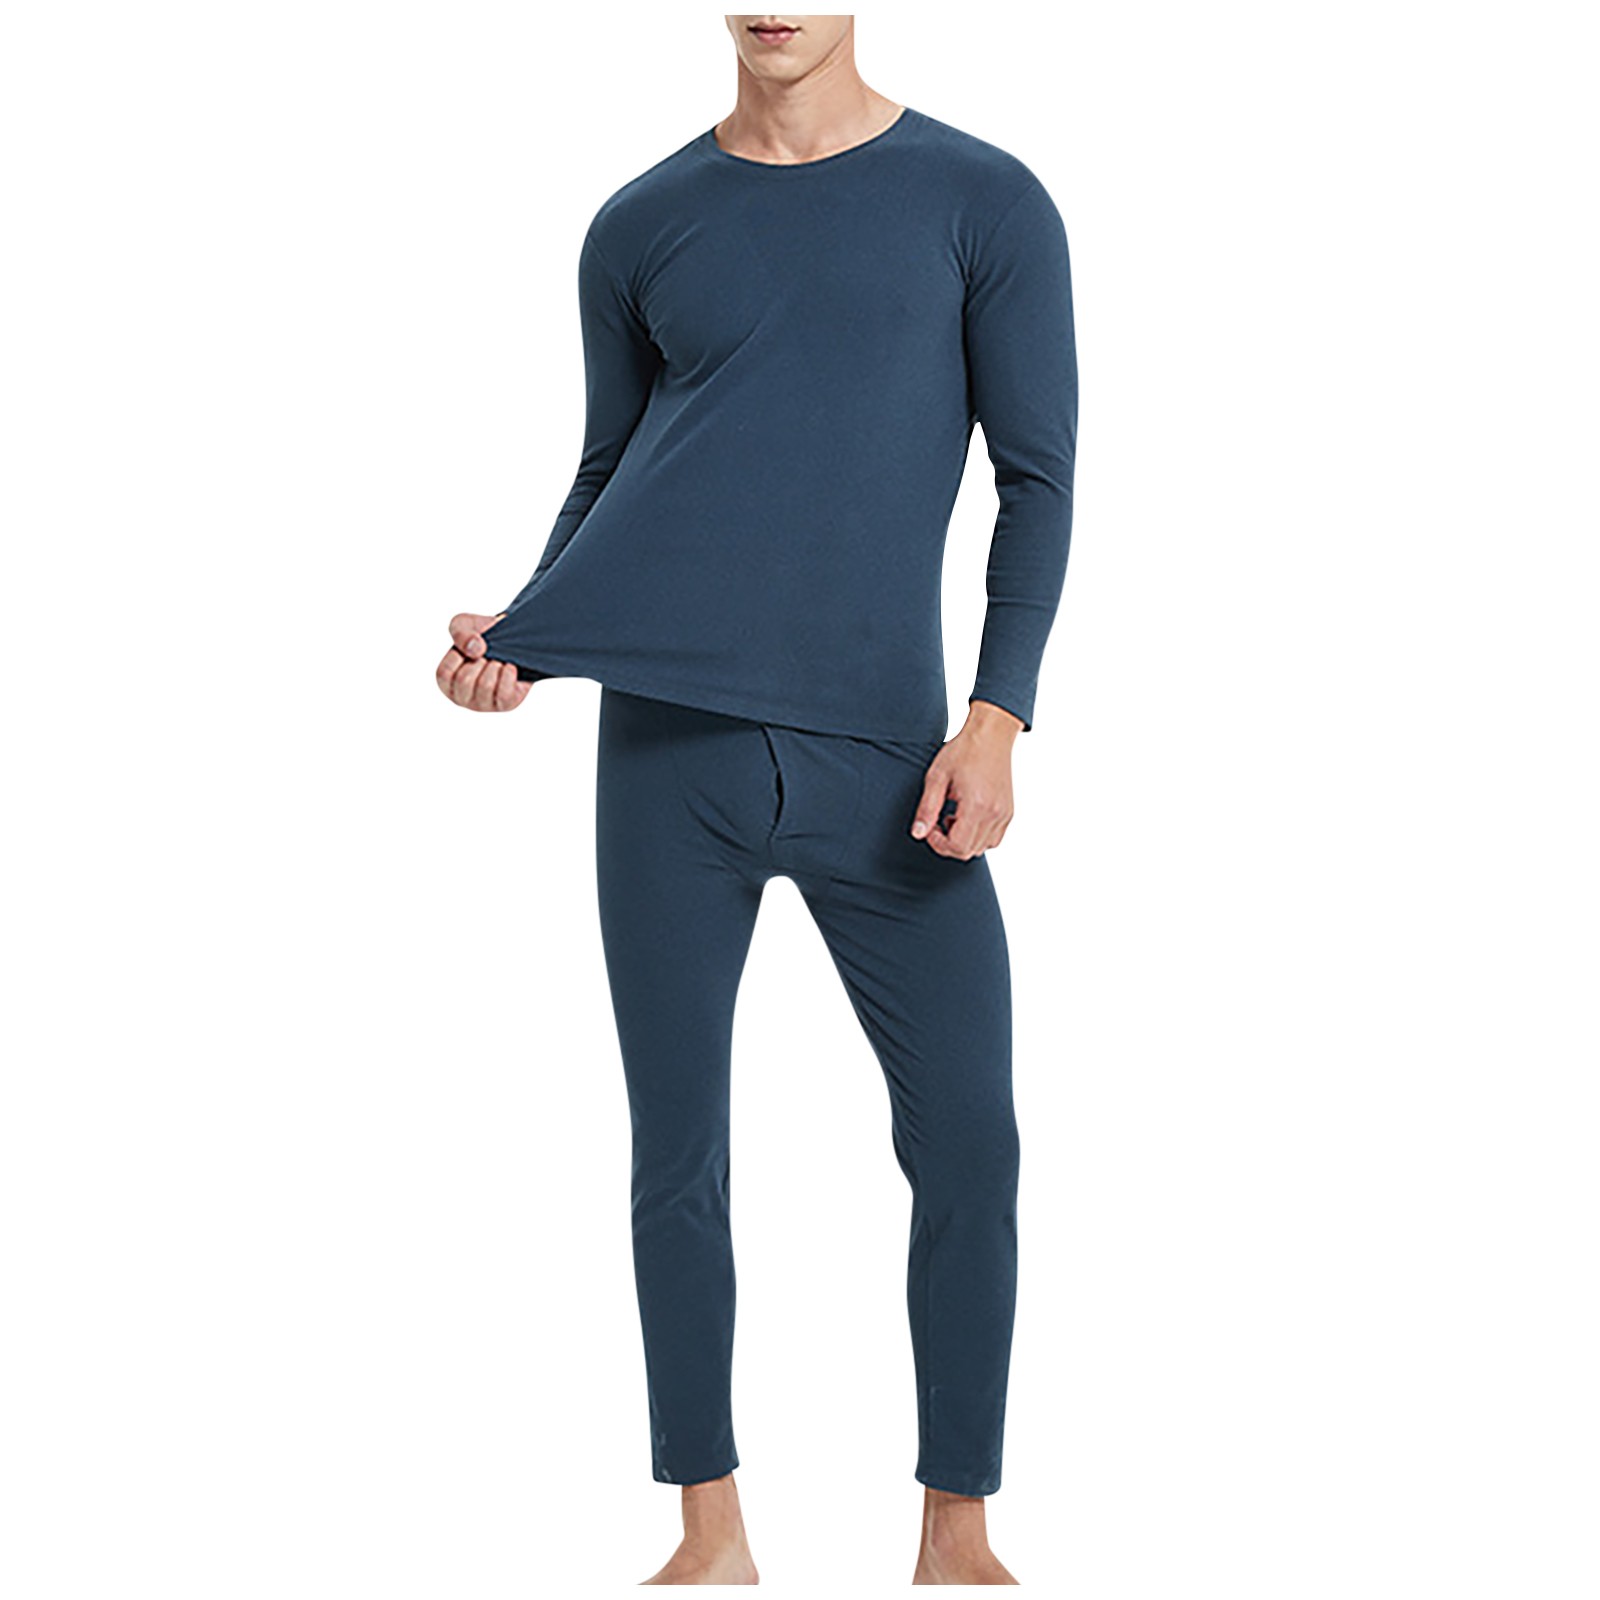 Roupa térmica Conjunto para homens Térmitos de inverno Roupa íntima Long Johns Tops de inverno Homens de lã grossa Pijamas de roupas térmicas